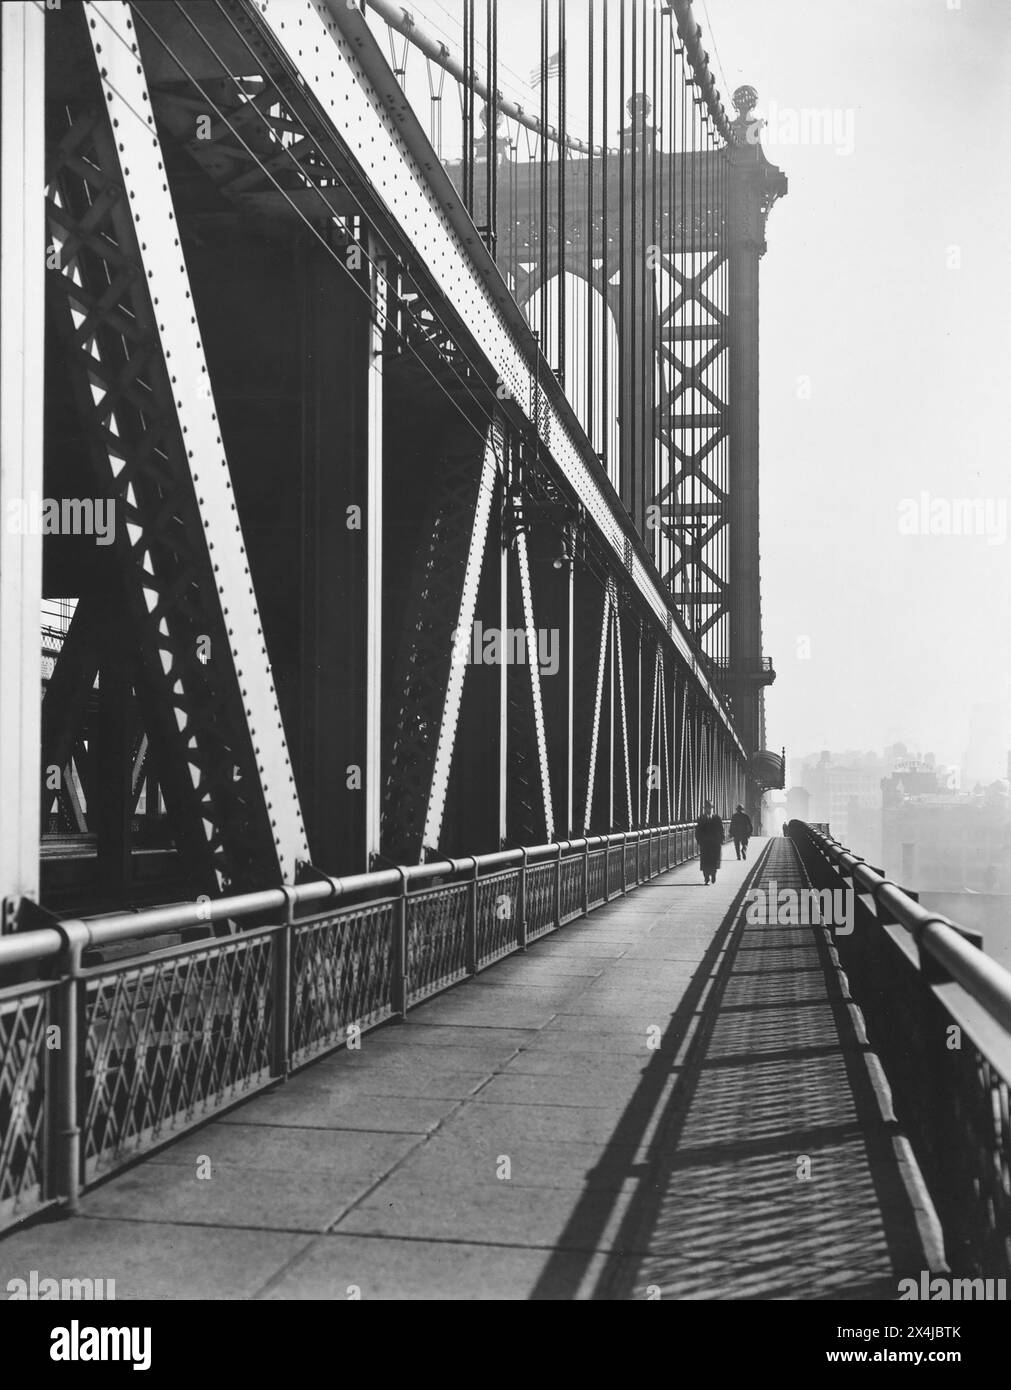 Passeggiata pedonale, Manhattan Bridge, New York City, New York, Stati Uniti, Berenice Abbott, Federal Art Project, "Changing New York", 1936 Foto Stock